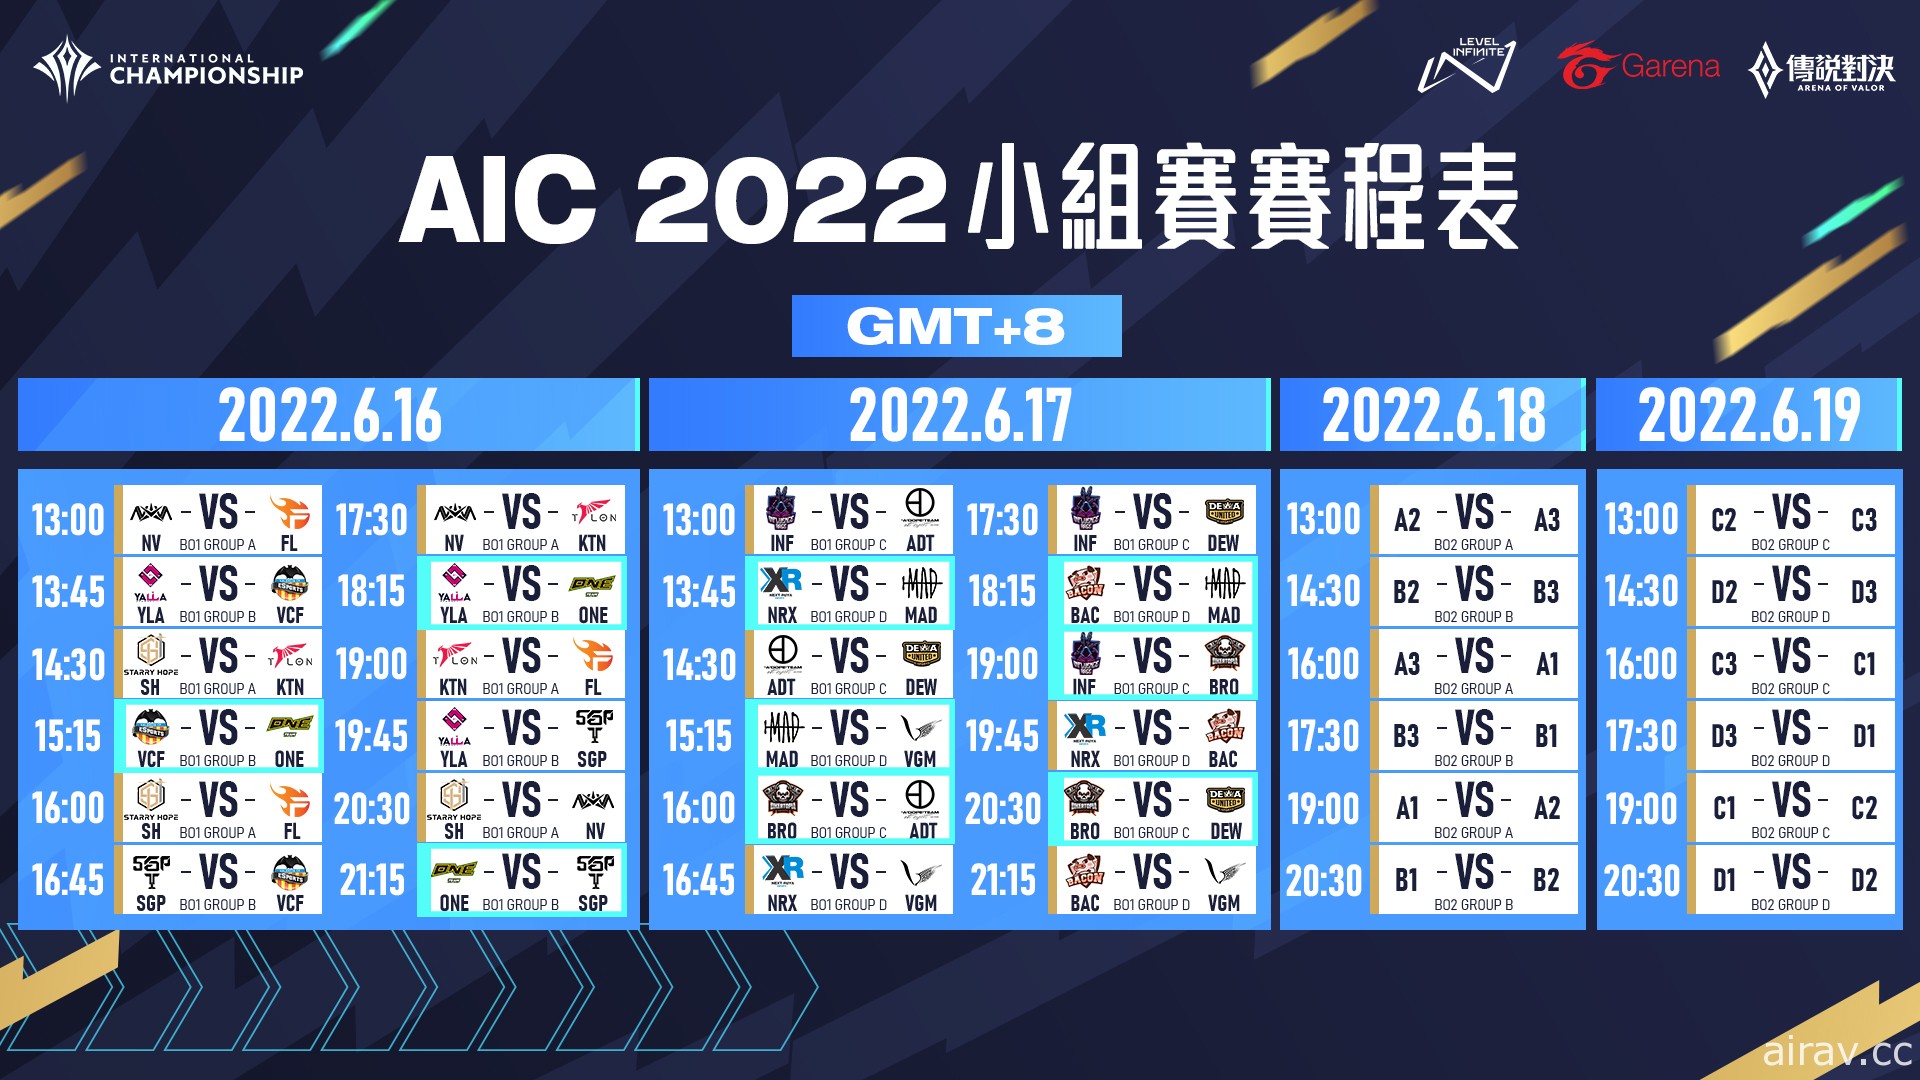 《傳說對決》AIC 2022 國際錦標賽小組賽抽籤結果和賽程揭曉 6/16 正式開戰